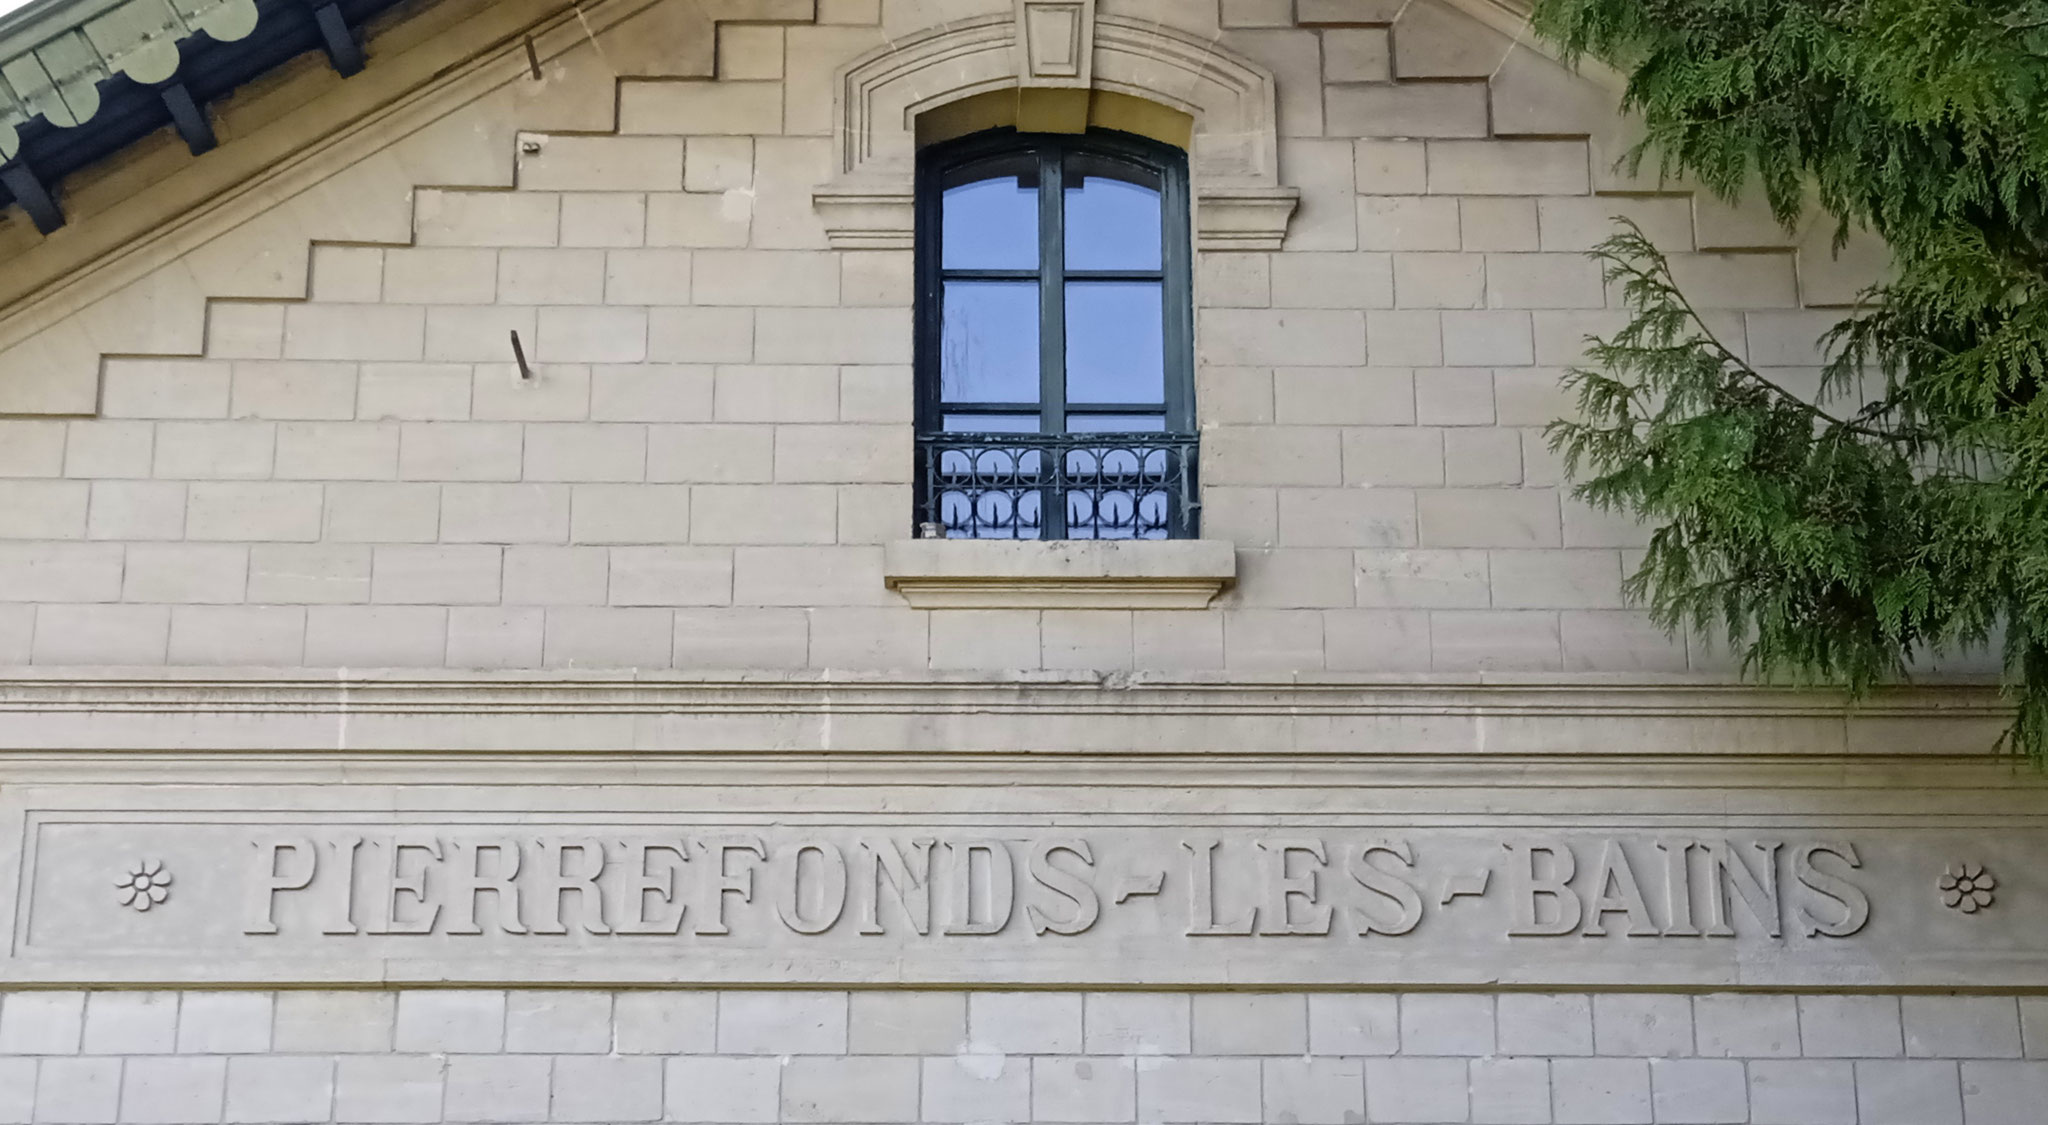 Pierrefonds-les-bains (dept 60).